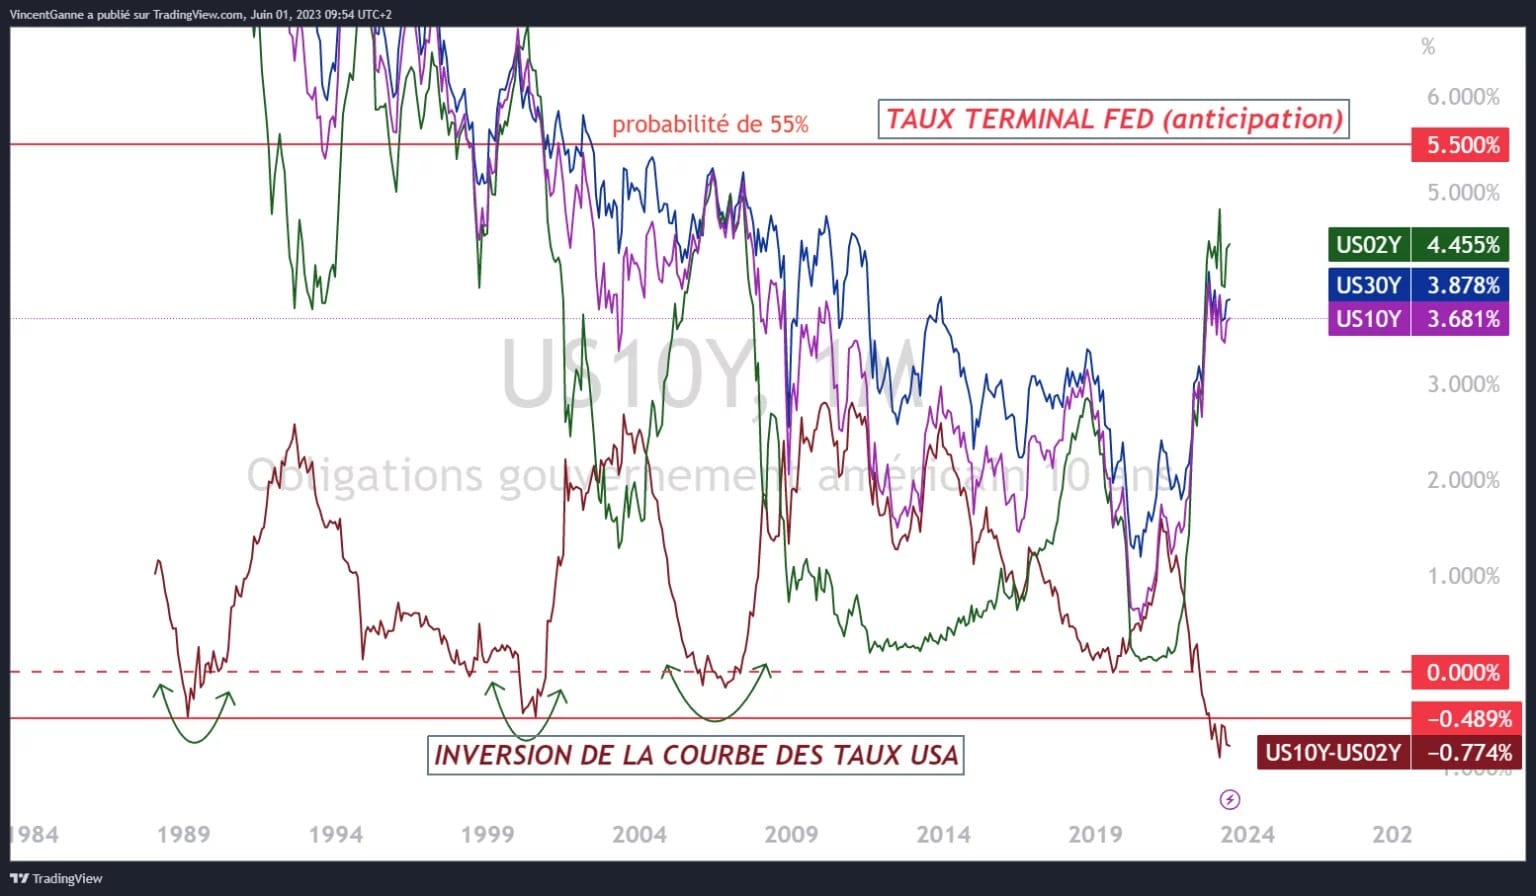 Wykres wyprodukowany za pomocą strony internetowej TradingView, który zestawia rentowności 2-, 10- i 30-letnich obligacji amerykańskich z najbardziej prawdopodobną końcową stopą Fed